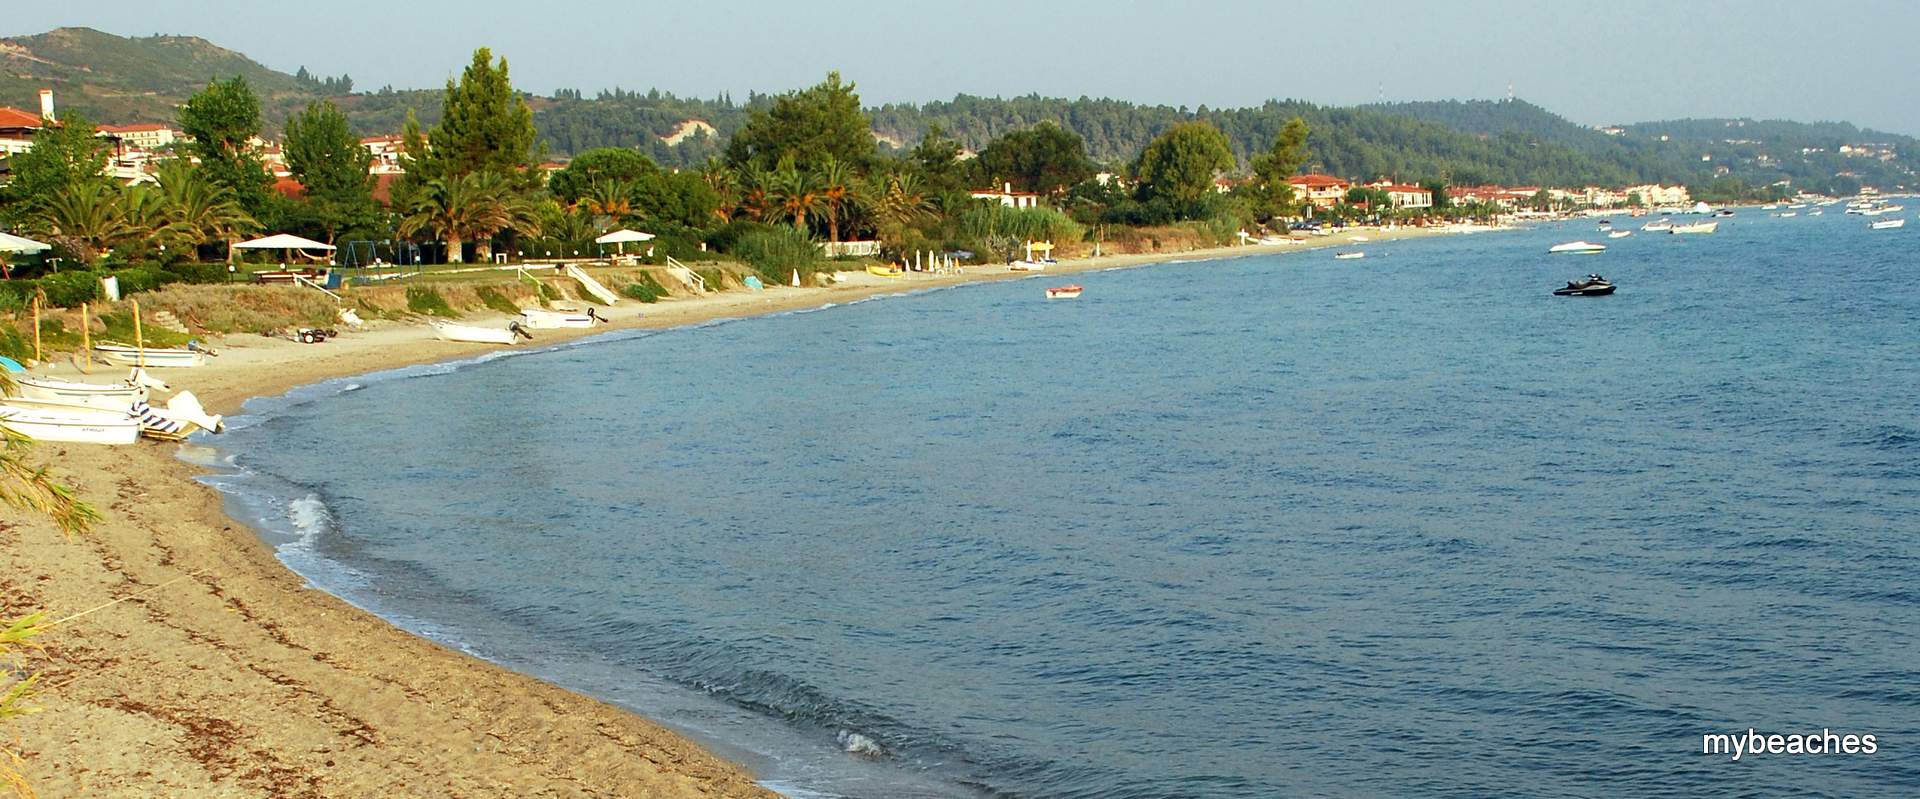 Λυγαριές παραλία, Κασσάνδρα, Χαλκιδική, Ελλάδα